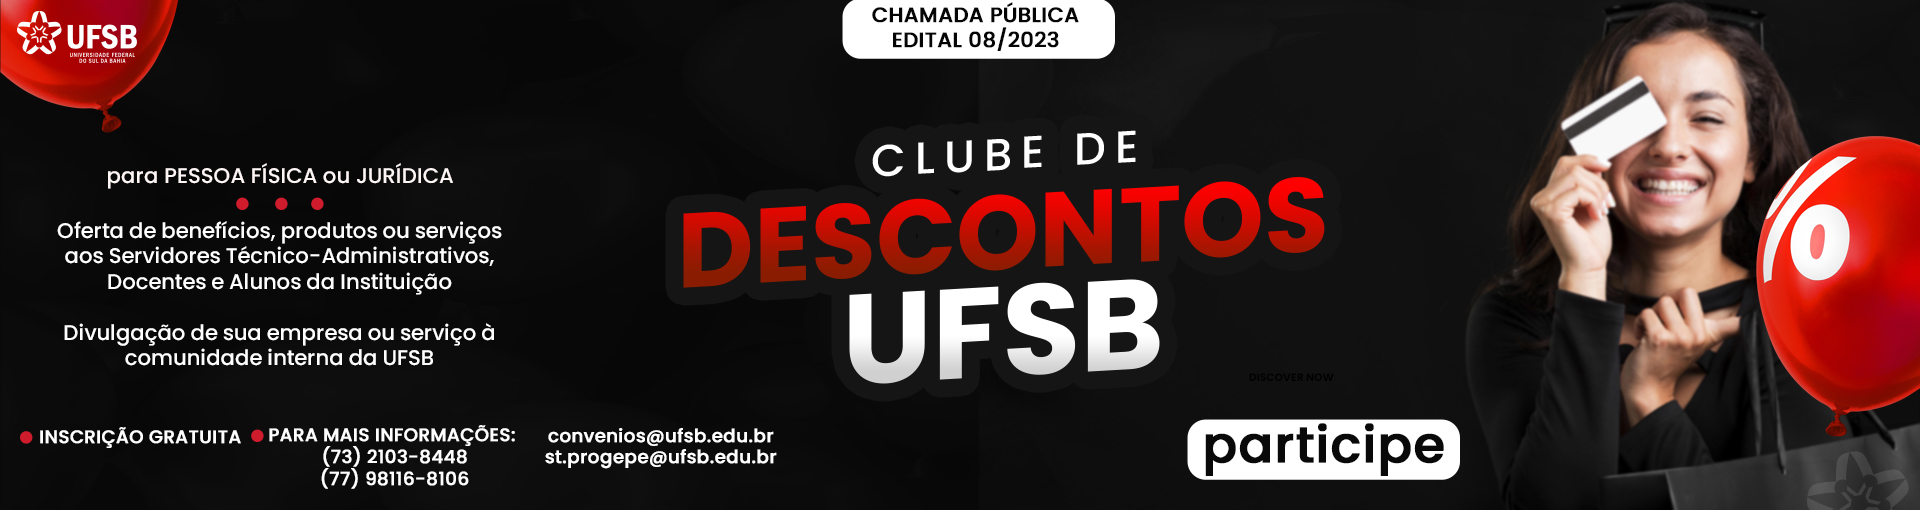 Clube de Descontos da UFSB